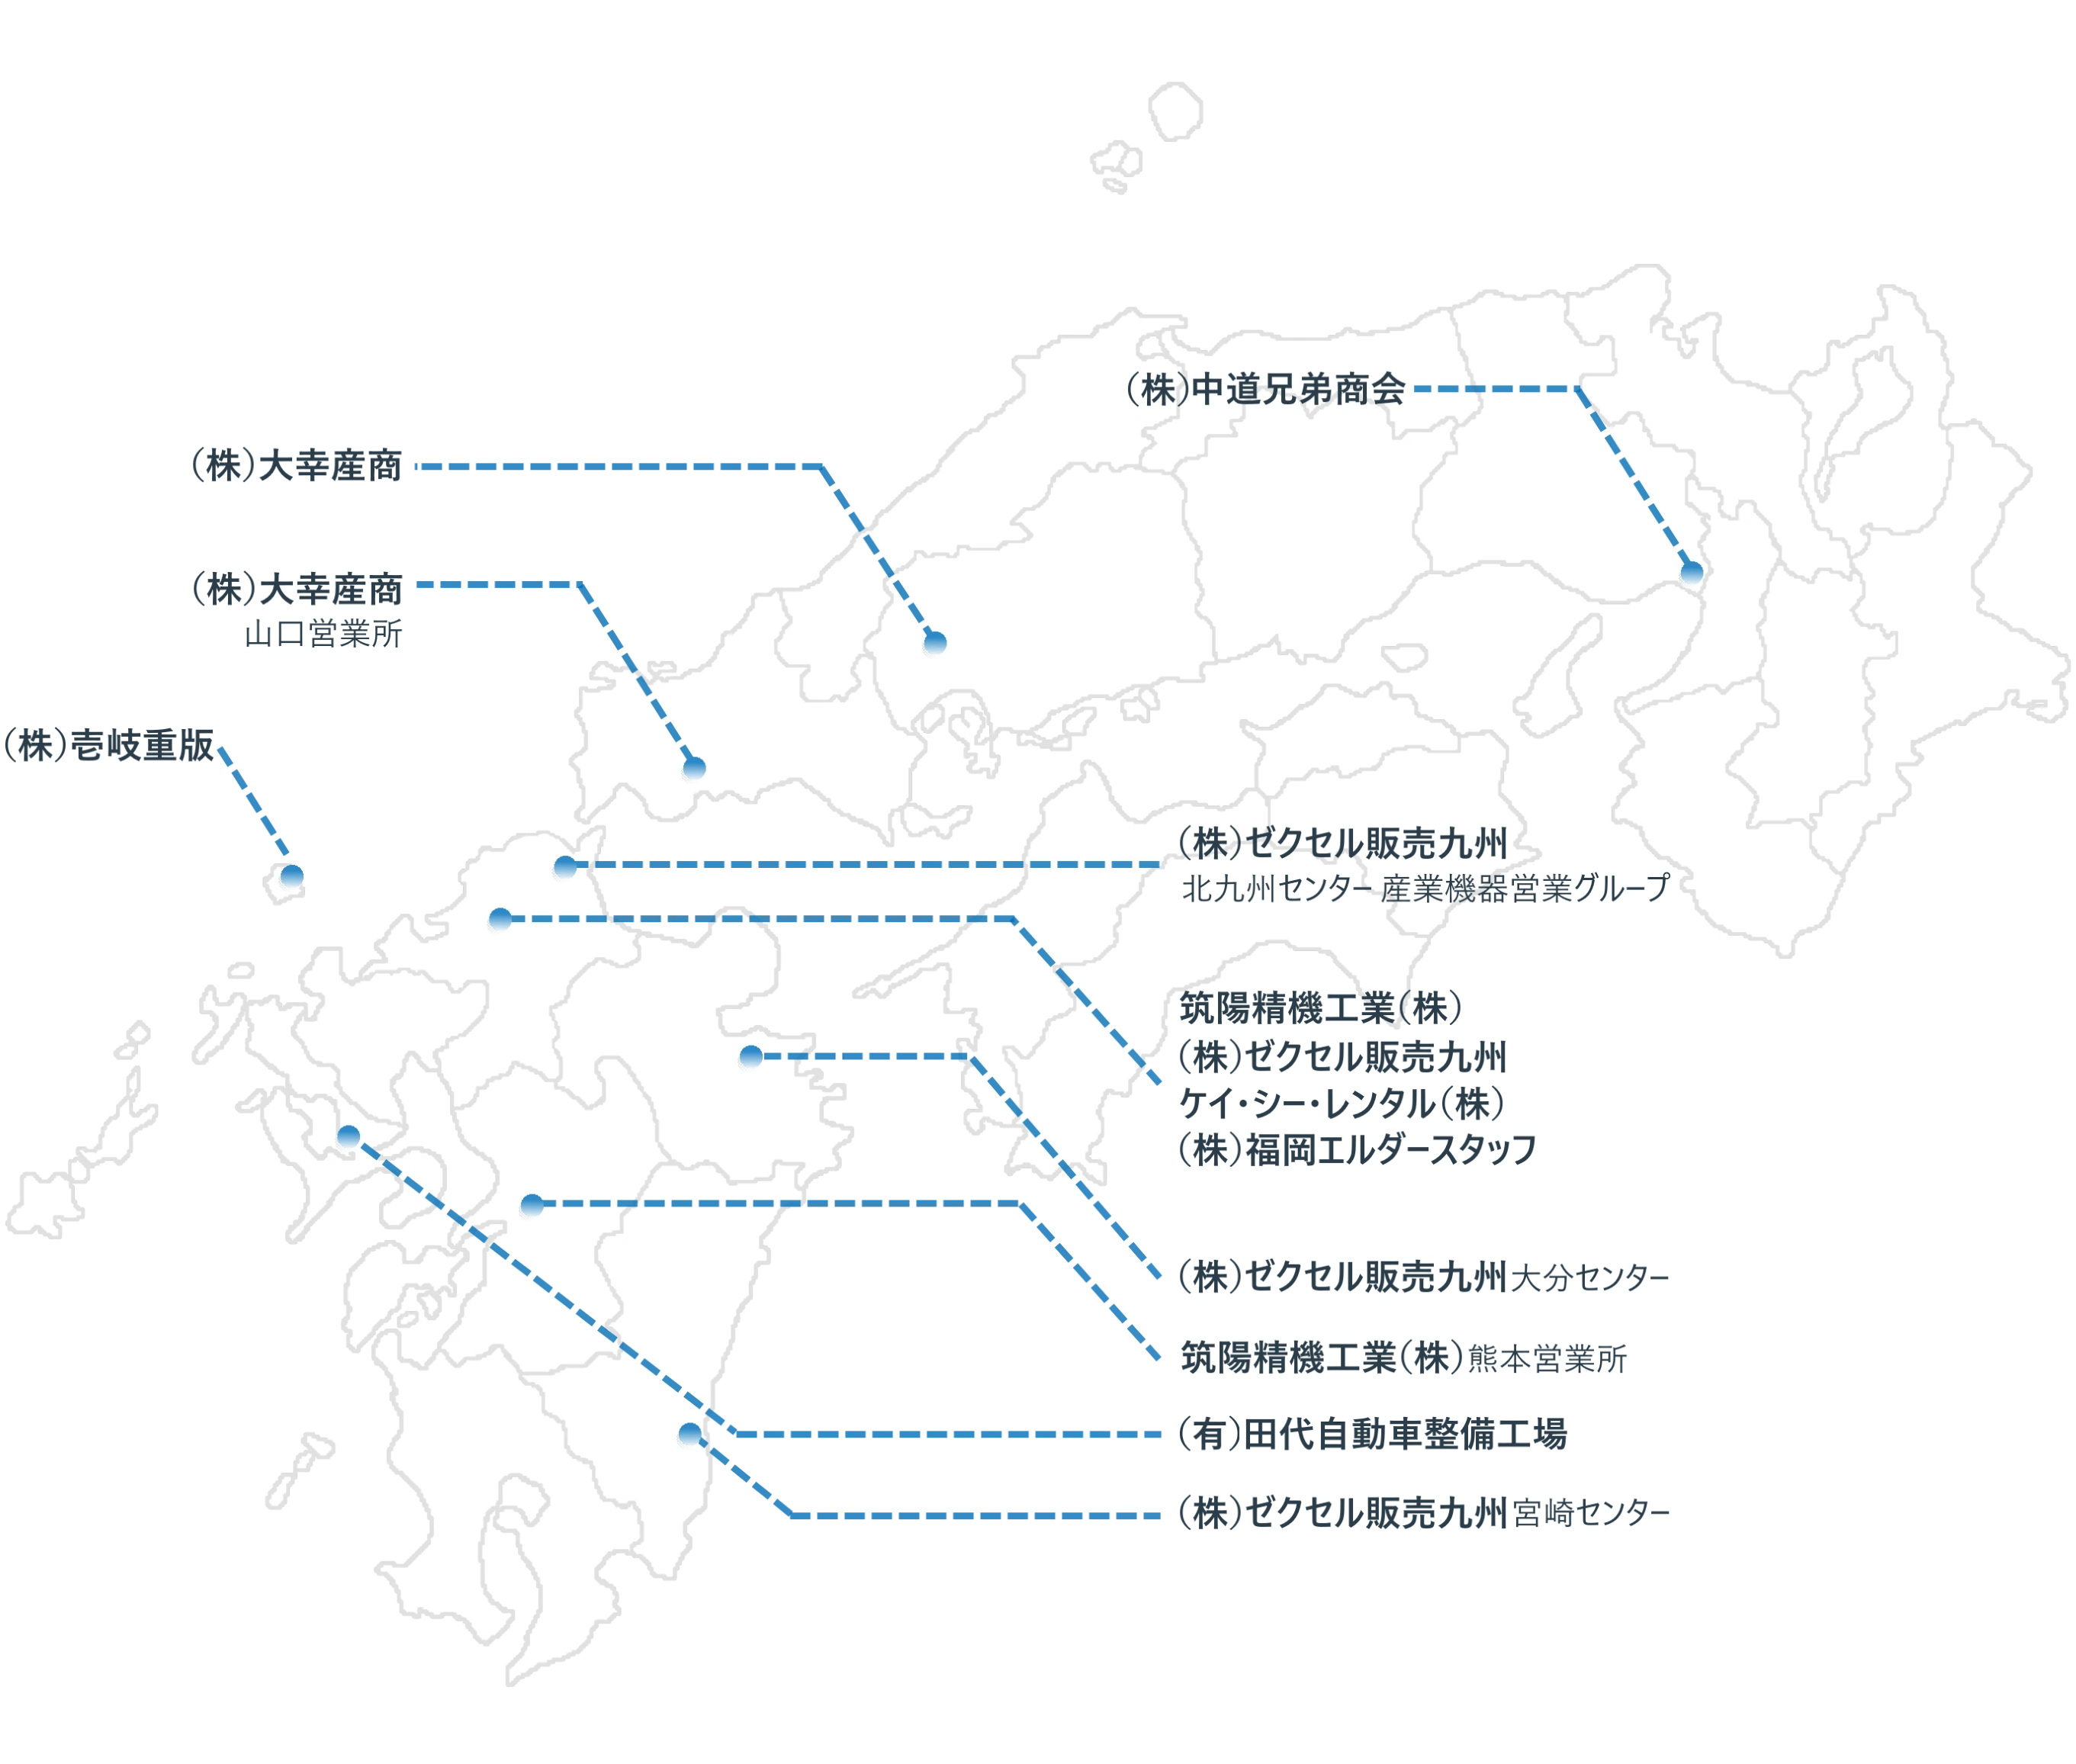 九州の地図：各グループ会社の所在地が記されている